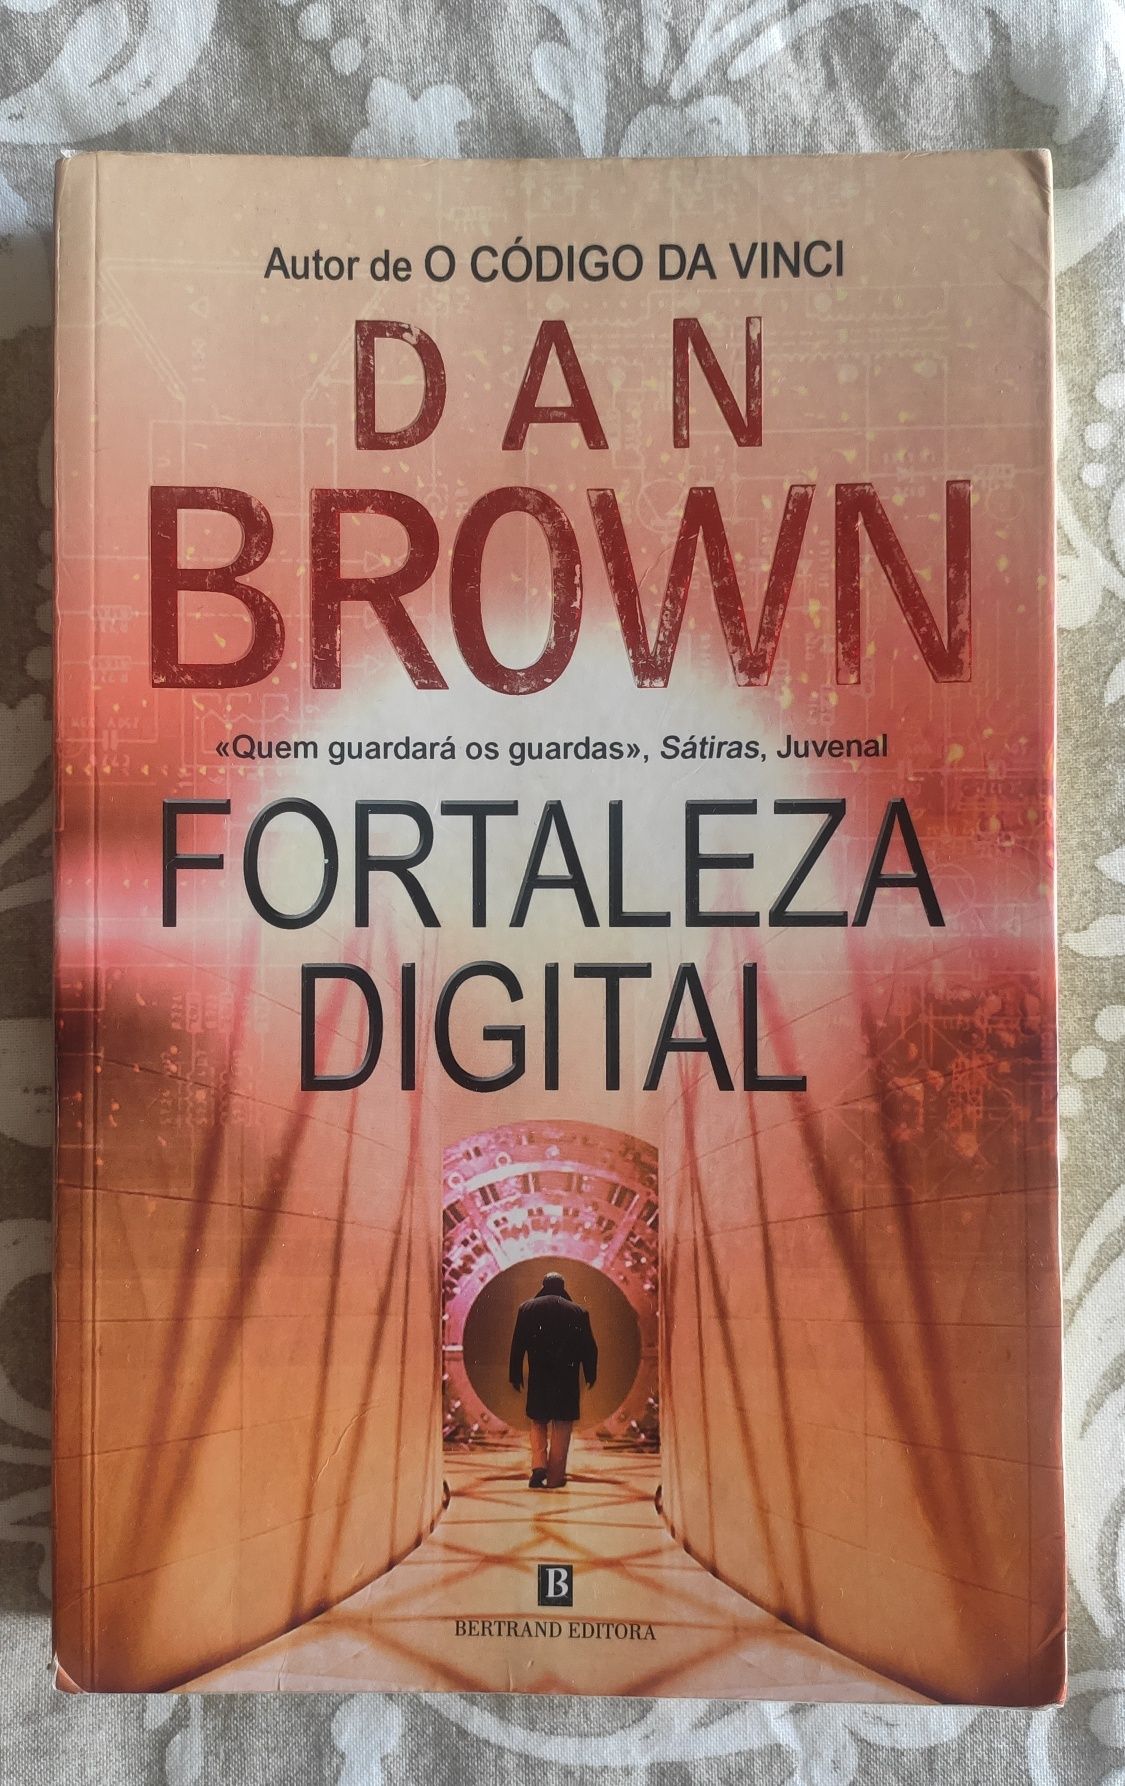 Fortaleza Digital - Dan Brown